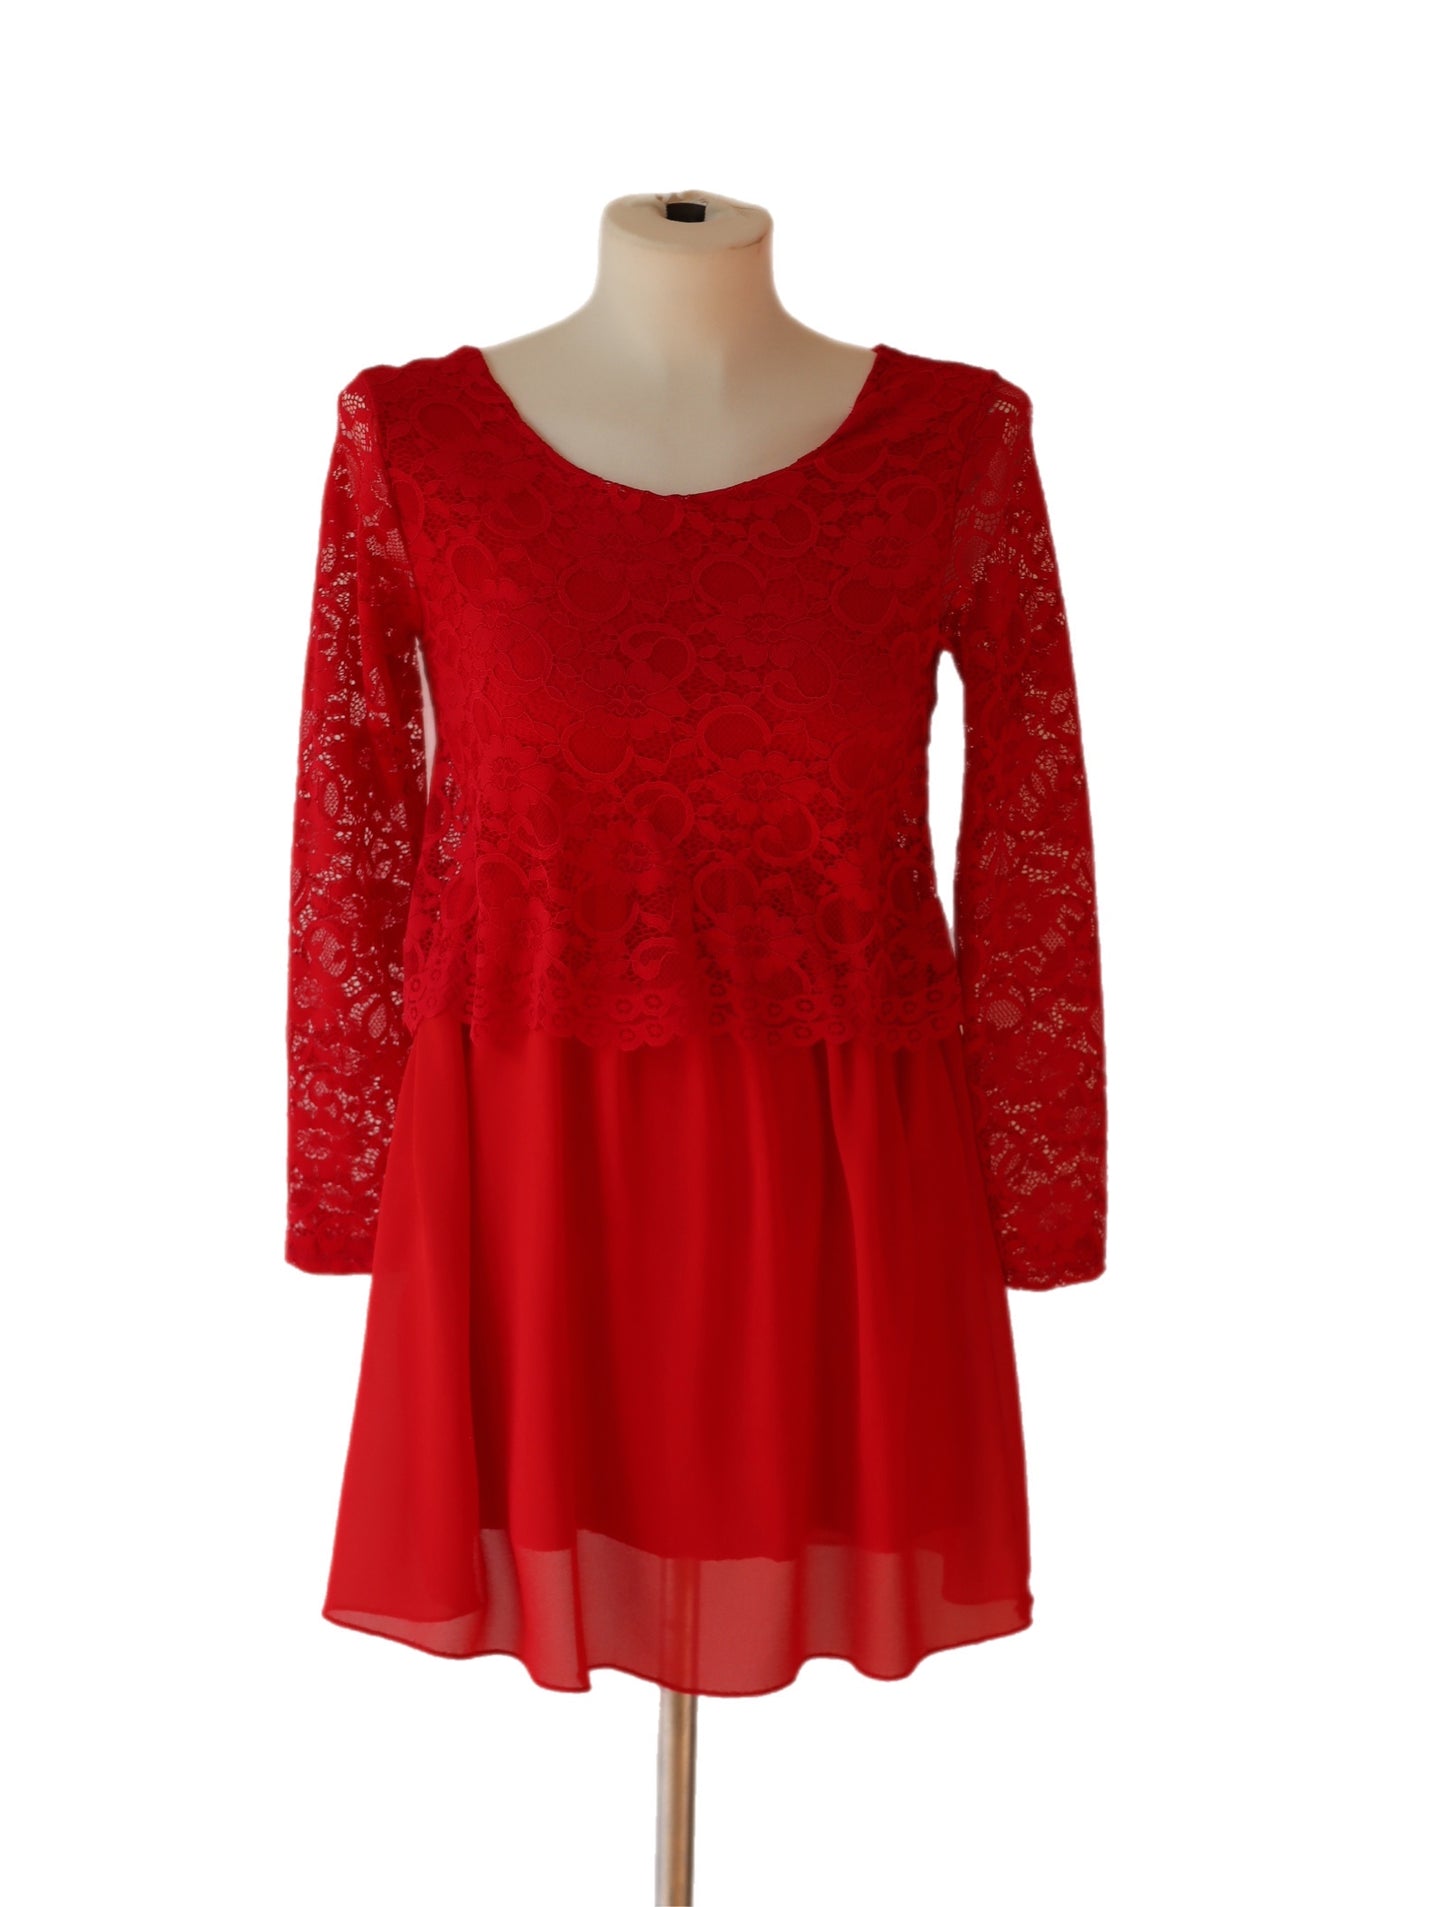 Rød kjole med blonder - secondhand